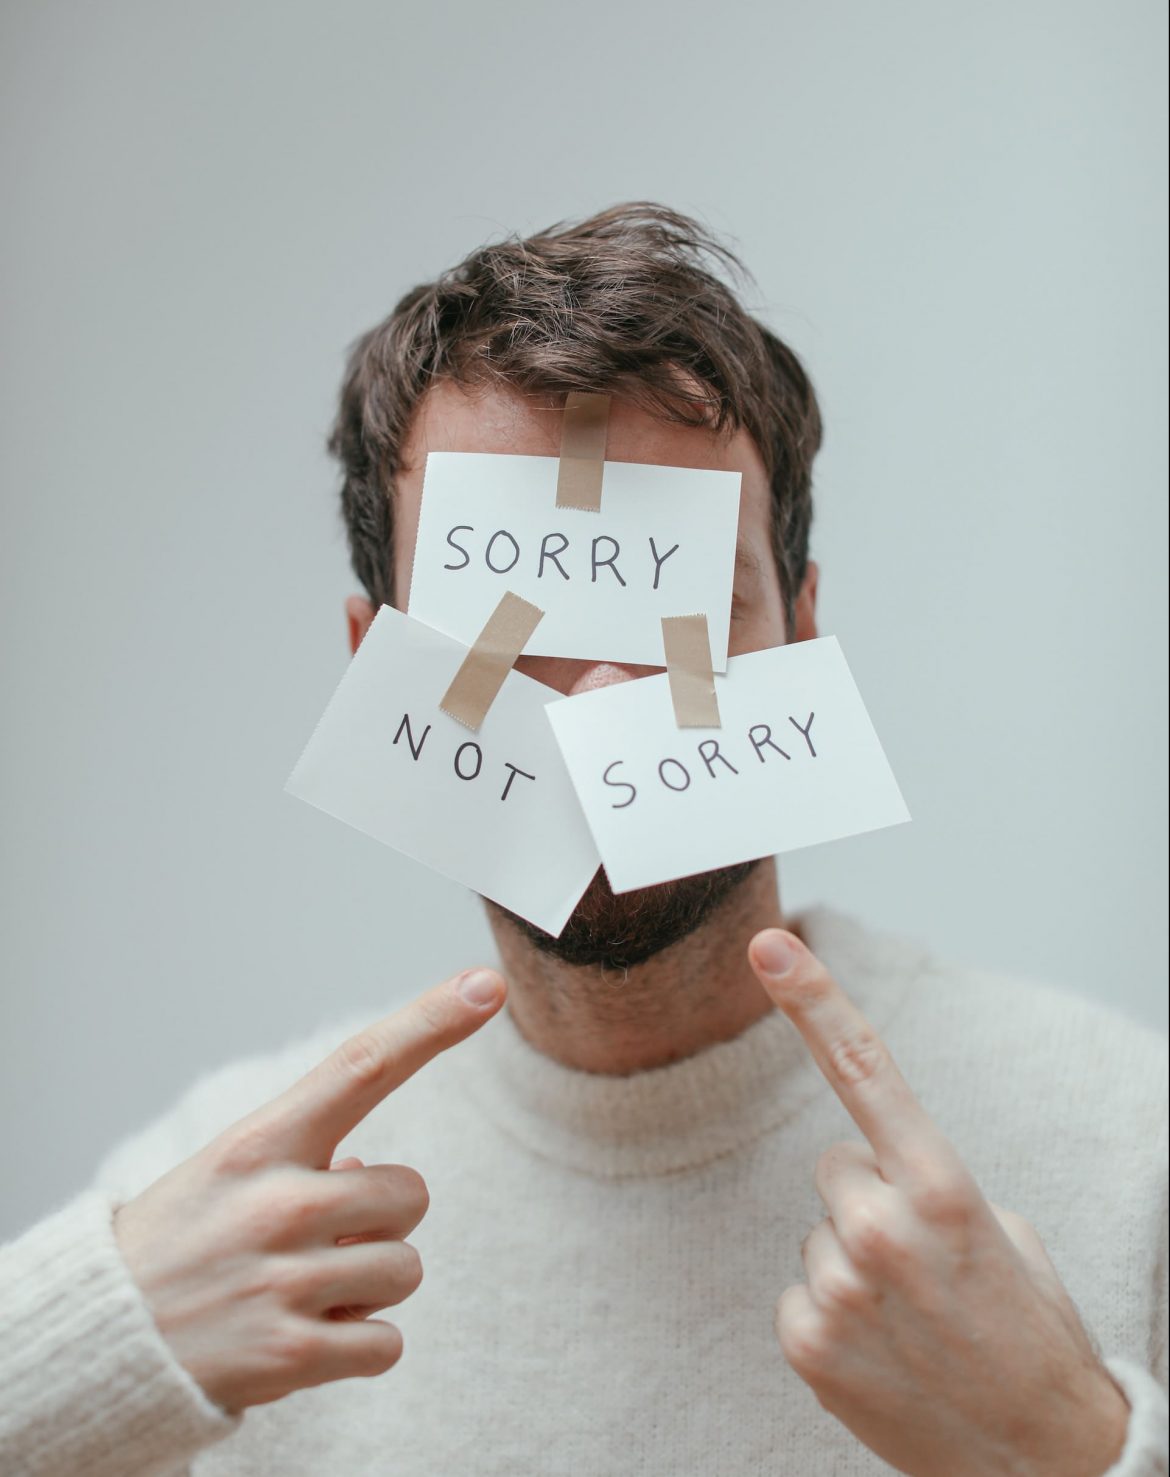 Entschuldigungen sind wichtig. Aber nicht immer angebracht und gesund